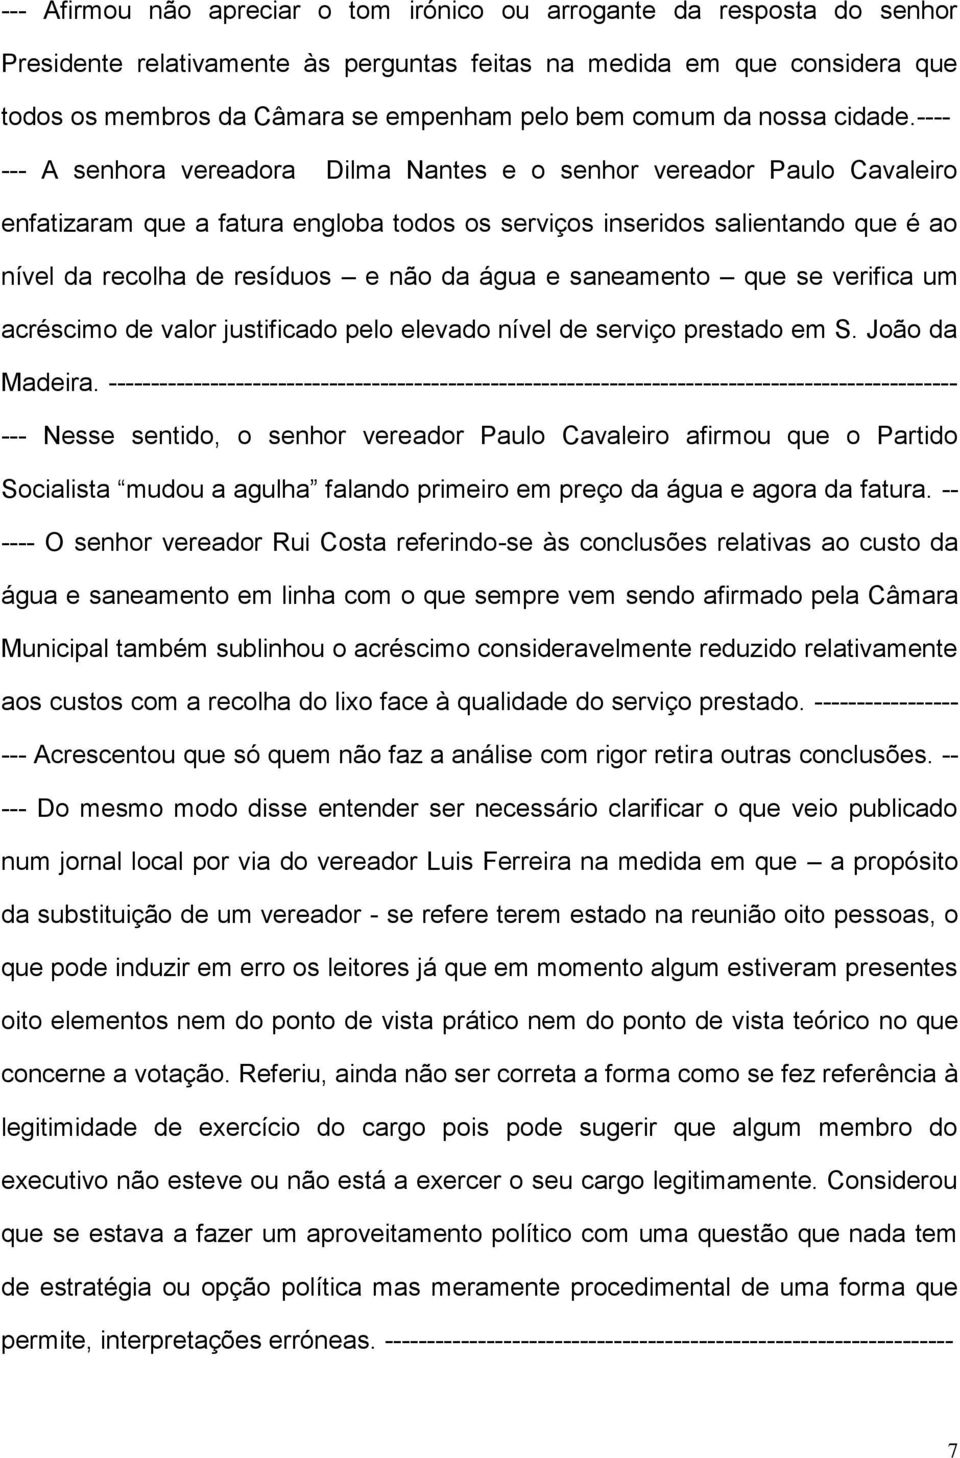 ---- --- A senhora vereadora Dilma Nantes e o senhor vereador Paulo Cavaleiro enfatizaram que a fatura engloba todos os serviços inseridos salientando que é ao nível da recolha de resíduos e não da